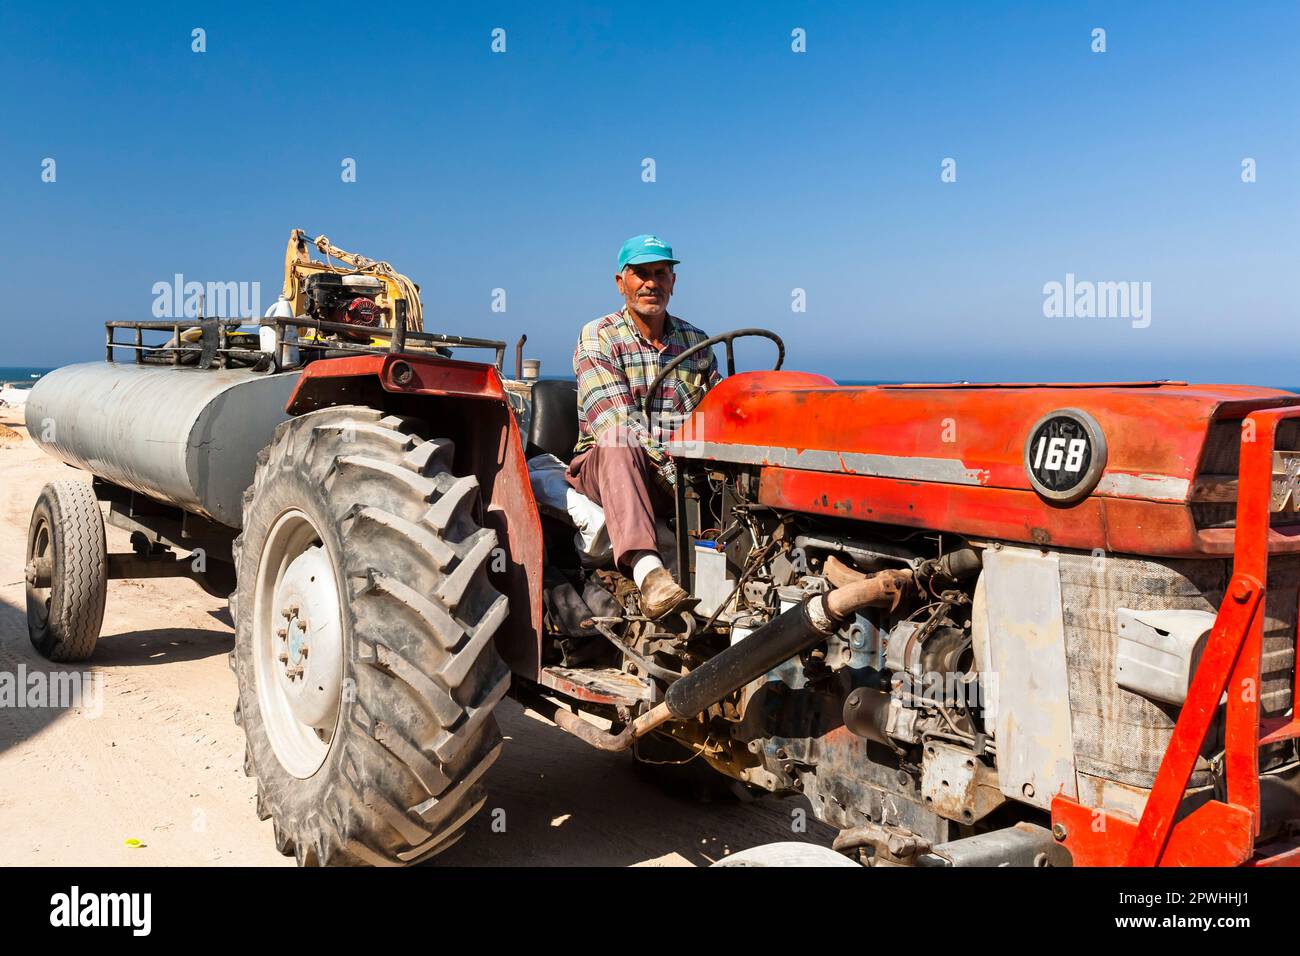 Uomo che guida trattore nell'antica area dell'isola di Tiro, punta della penisola, Mar mediterraneo, Tiro(Sour,sur), Libano, medio Oriente, Asia Foto Stock